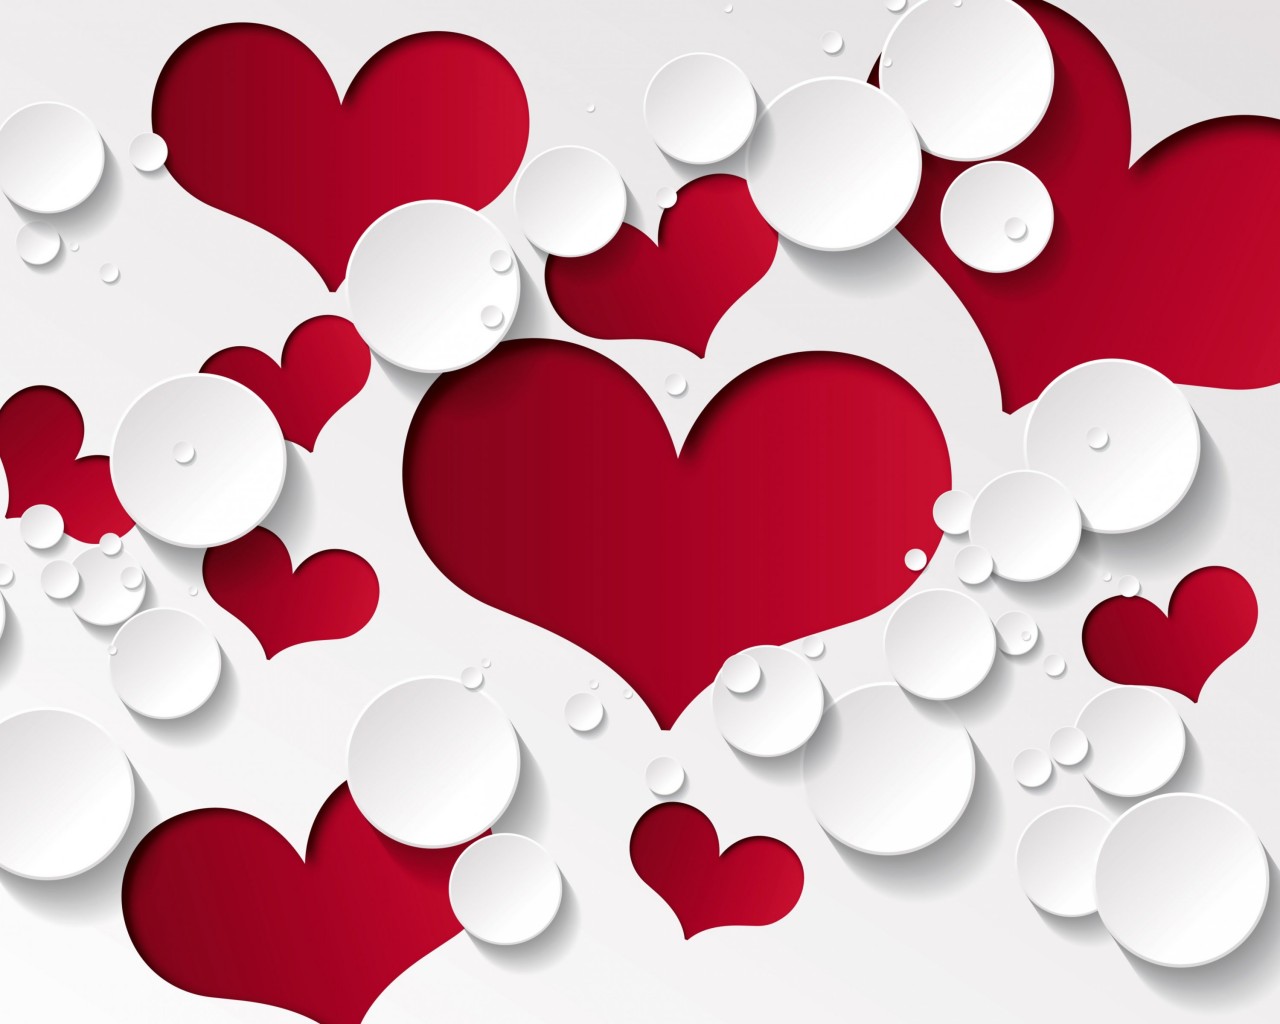 Love Heart Shaped Pattern Wallpaper for Desktop 1280x1024